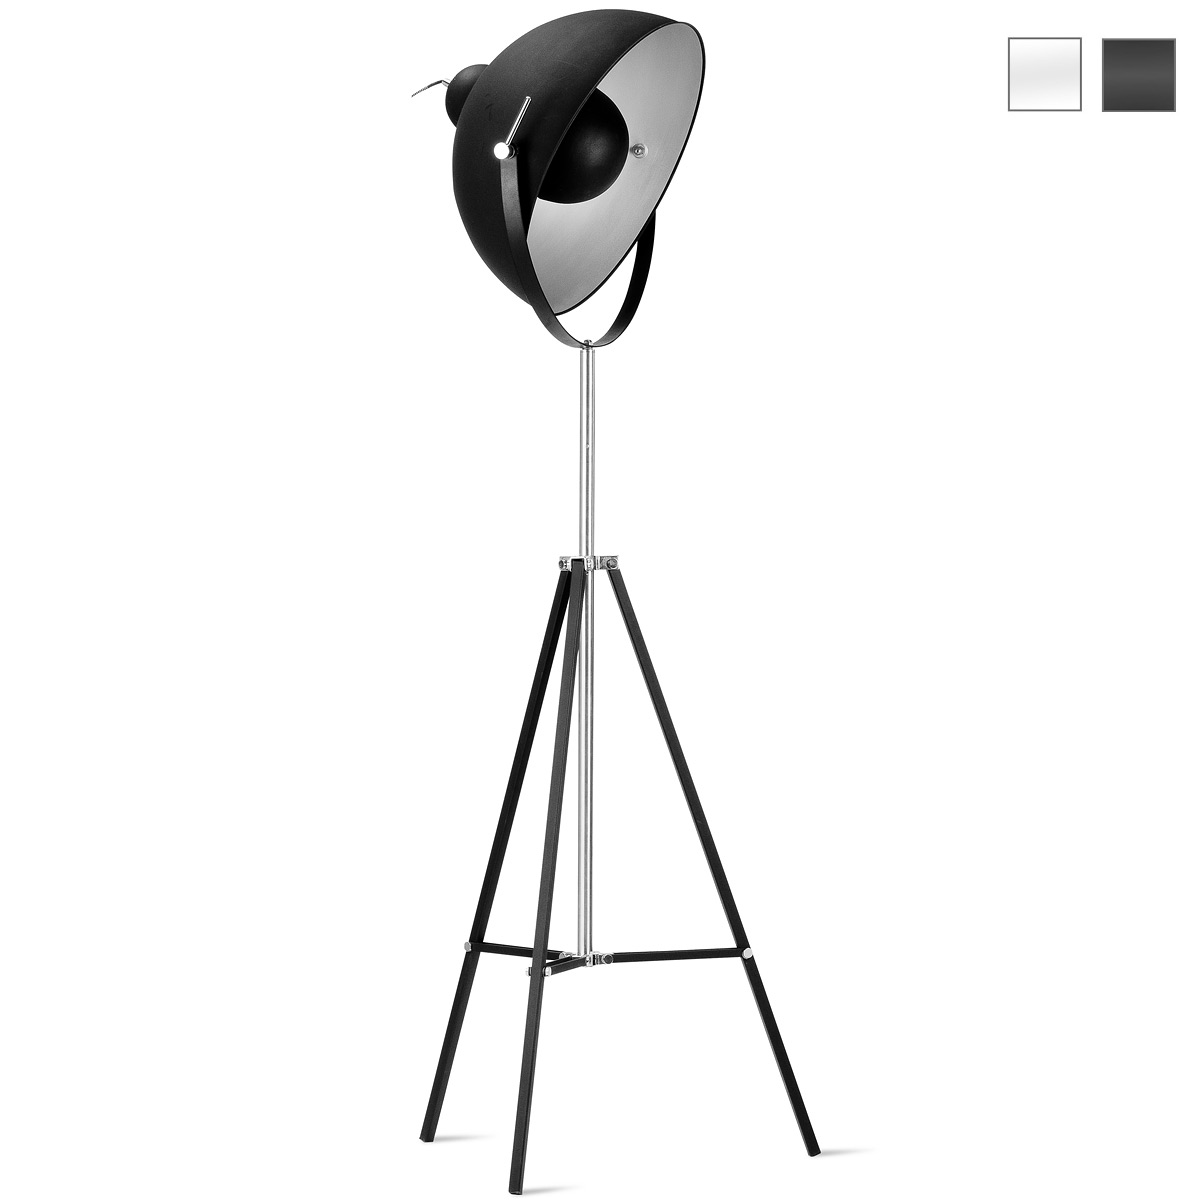 Scheinwerfer-Stehleuchte mit Dreibein-Stativ im Studio-Stil: Stehlampe im Stil eines Studio-Scheinwerfers, mit Dreibeinstativ